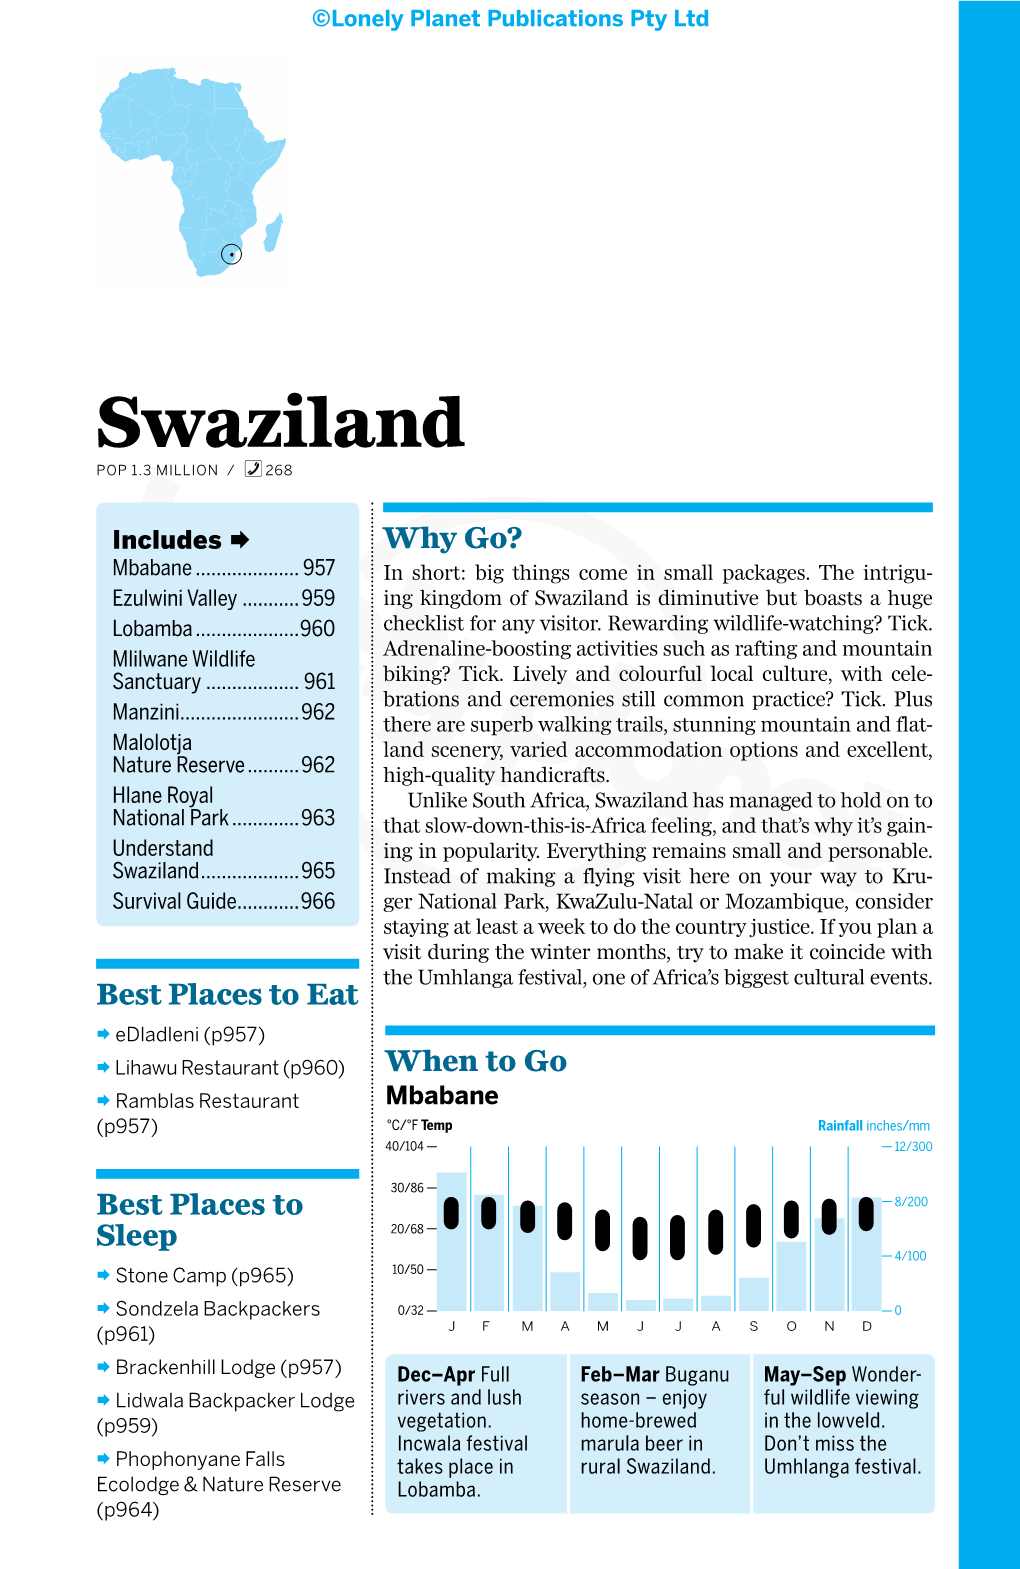 Swaziland% POP 1.3 MILLION / 268